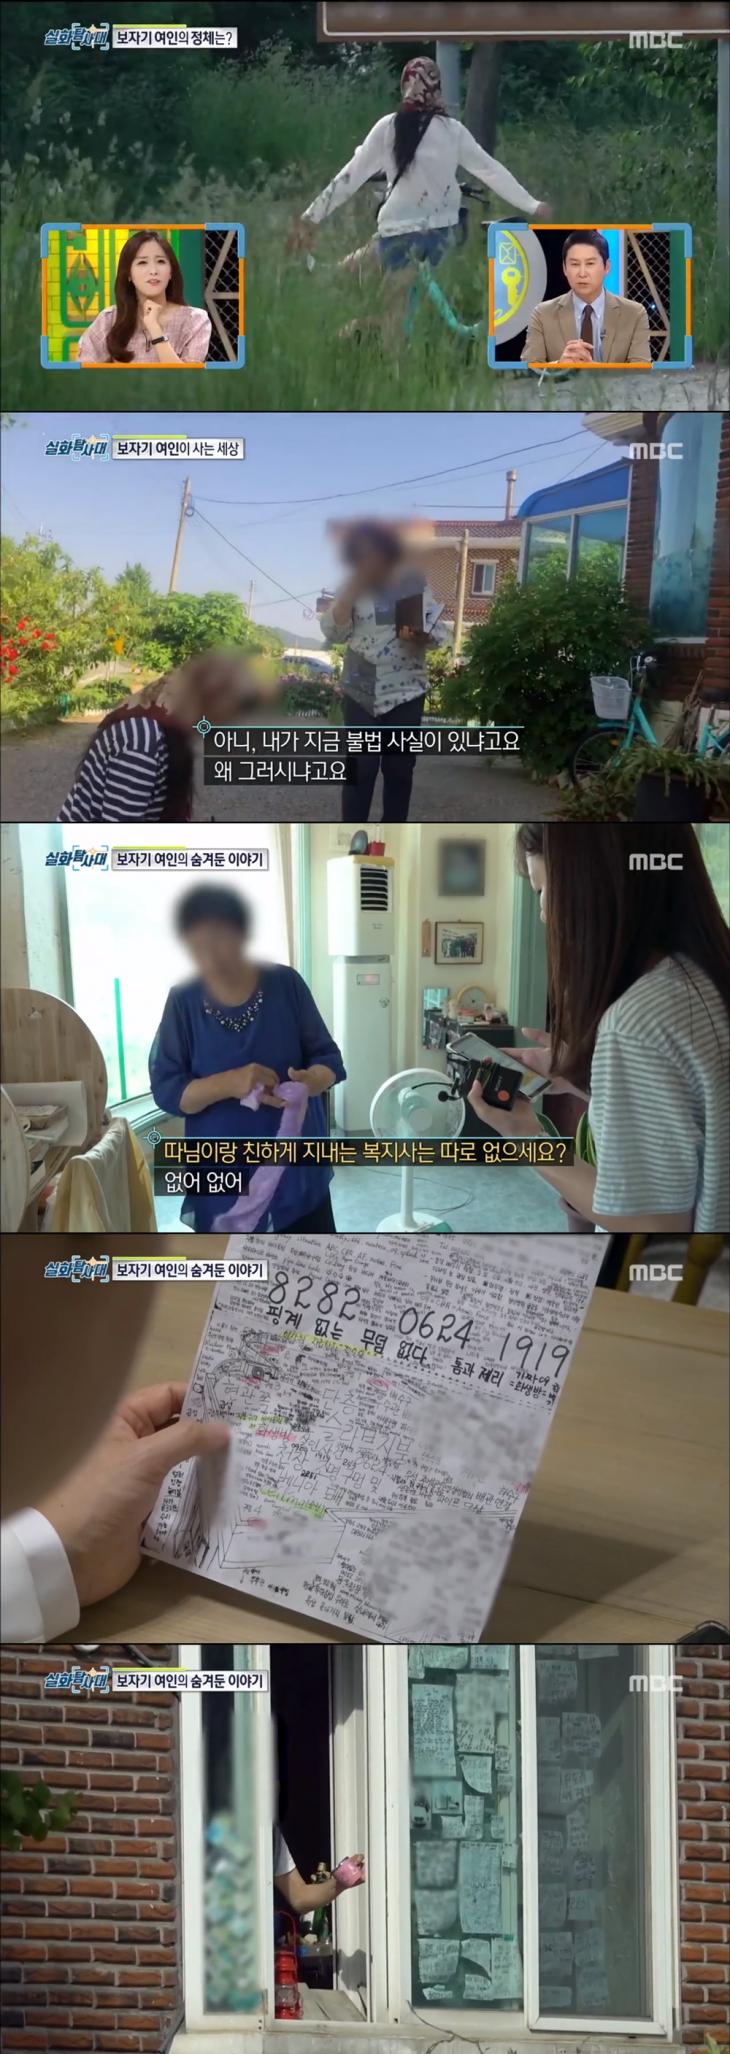 MBC '실화탐사대' 방송 캡쳐